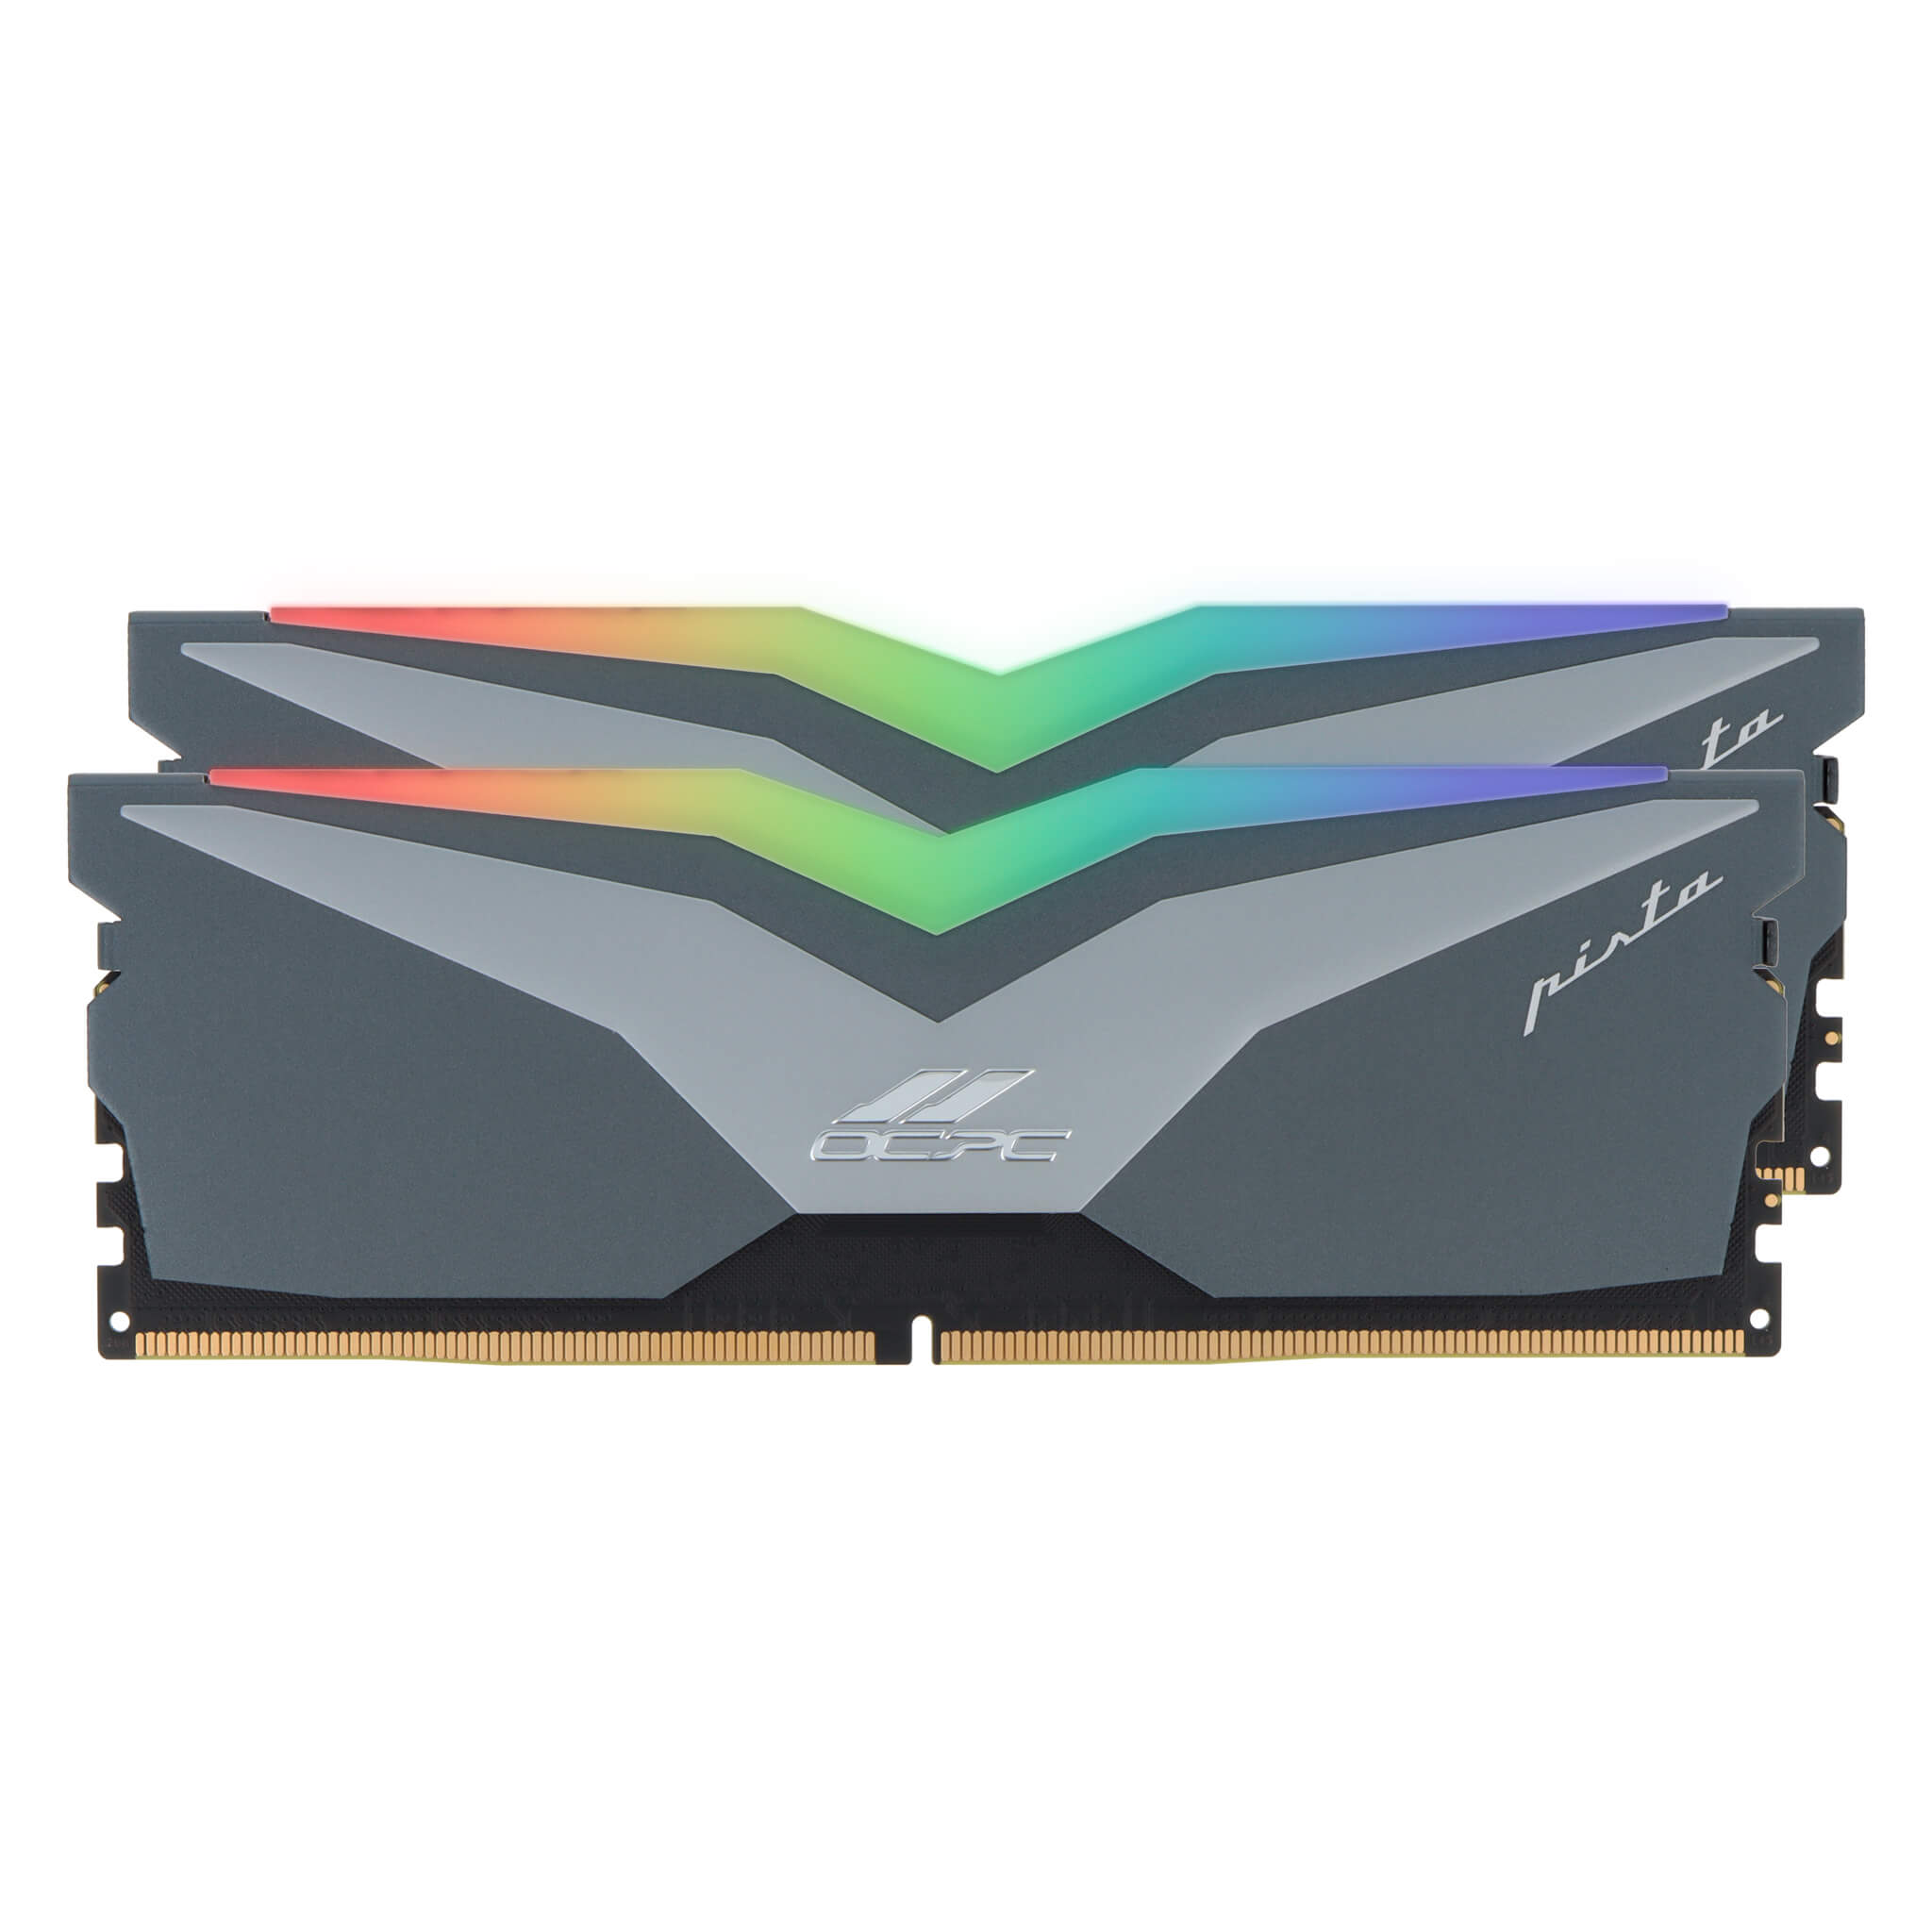 OCPC PISTA DDR5 RGB Memory - 32GB (2x16GB) - 5200MHz - CL36 - DIMM - Desktop